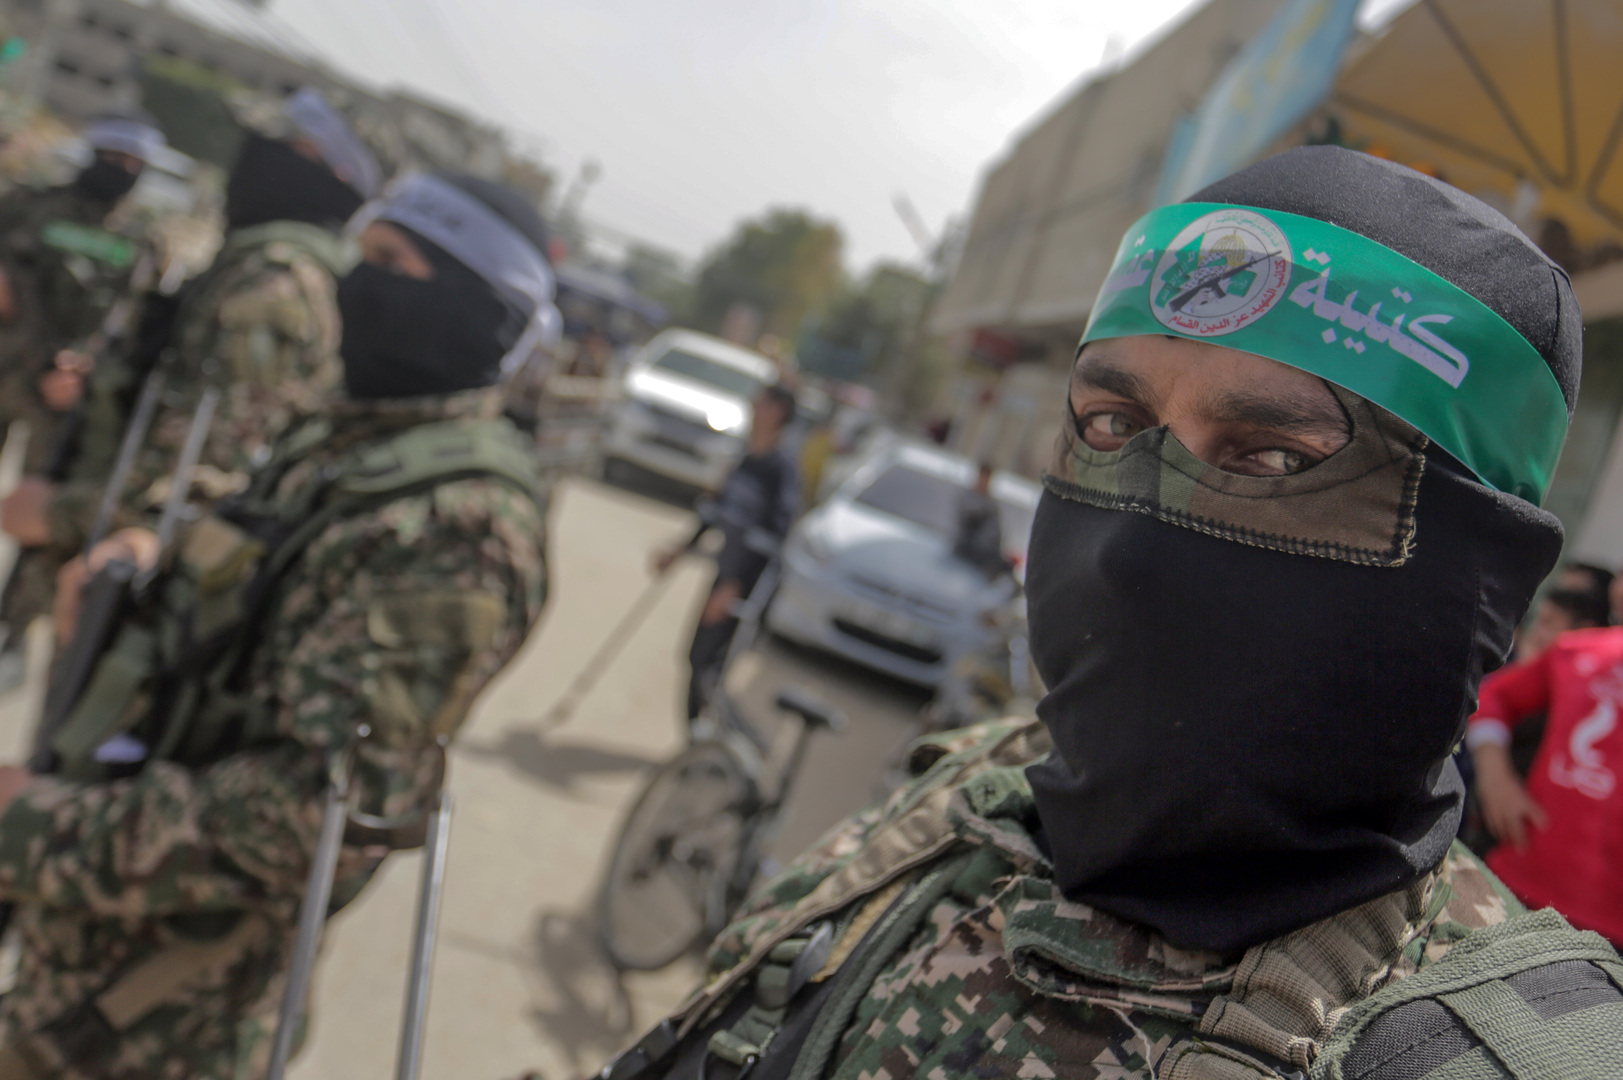 عضو بالكنيست يكشف خلافات المجلس الحربي: كيف ستتمكن حماس من إعادة تأهيل نفسها عسكريا؟